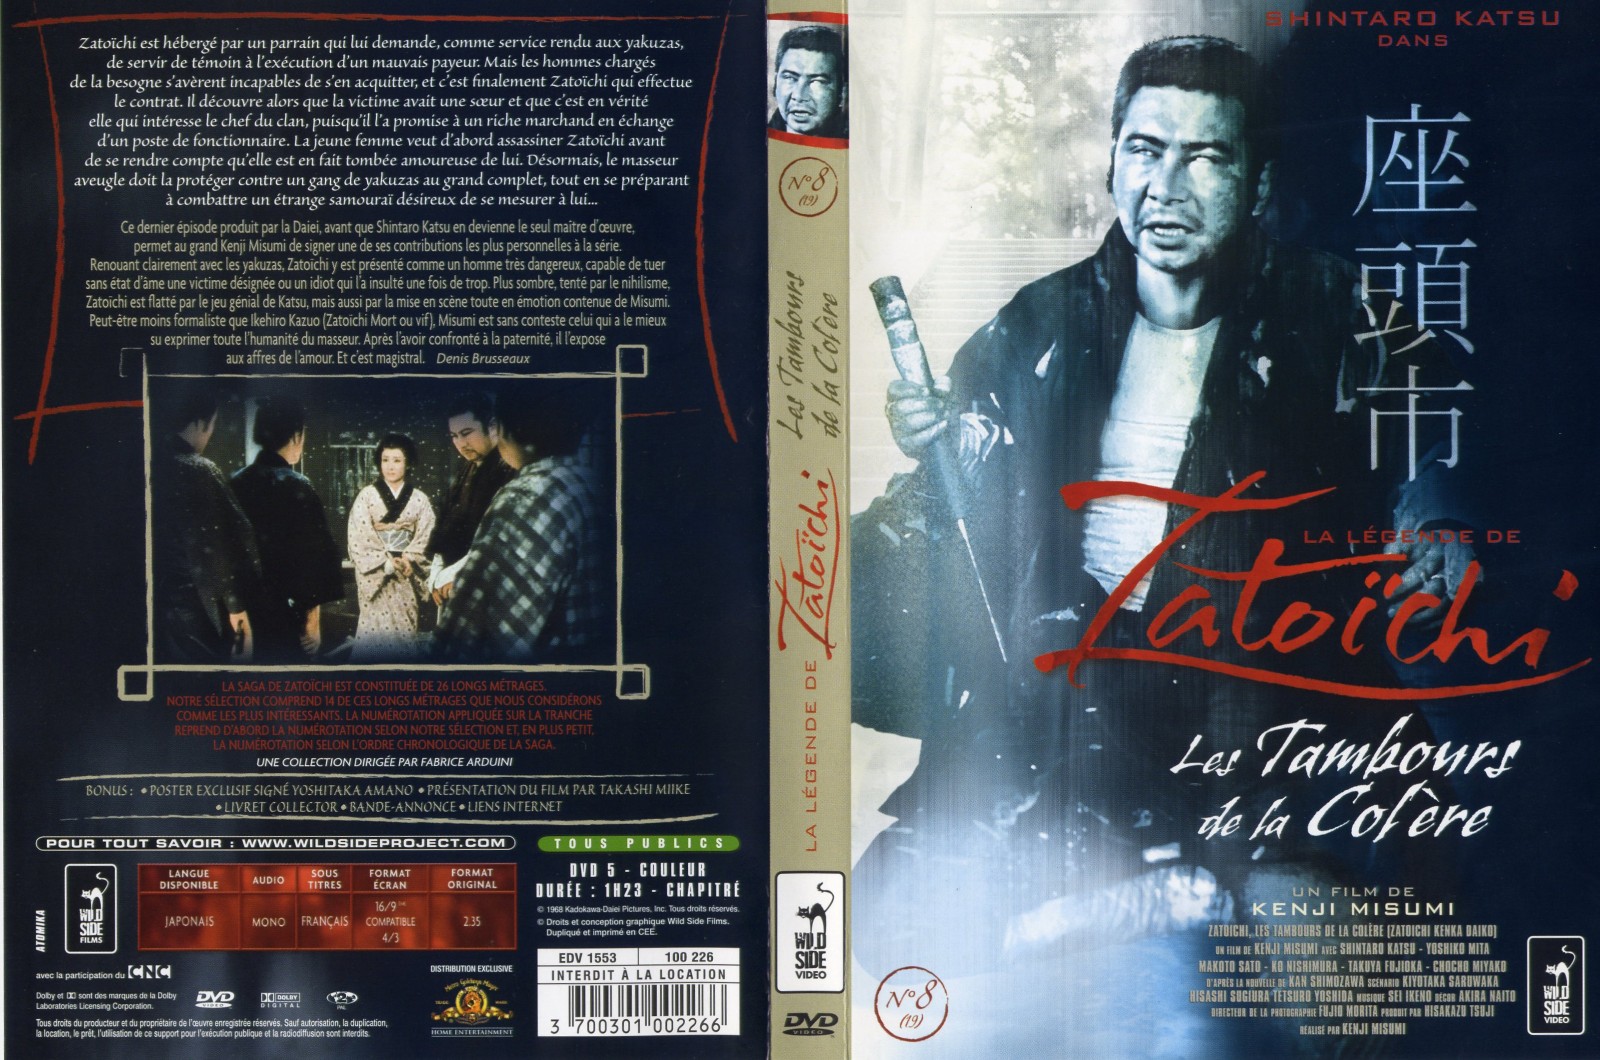 Jaquette DVD Zatoichi - Les tambours de la colre